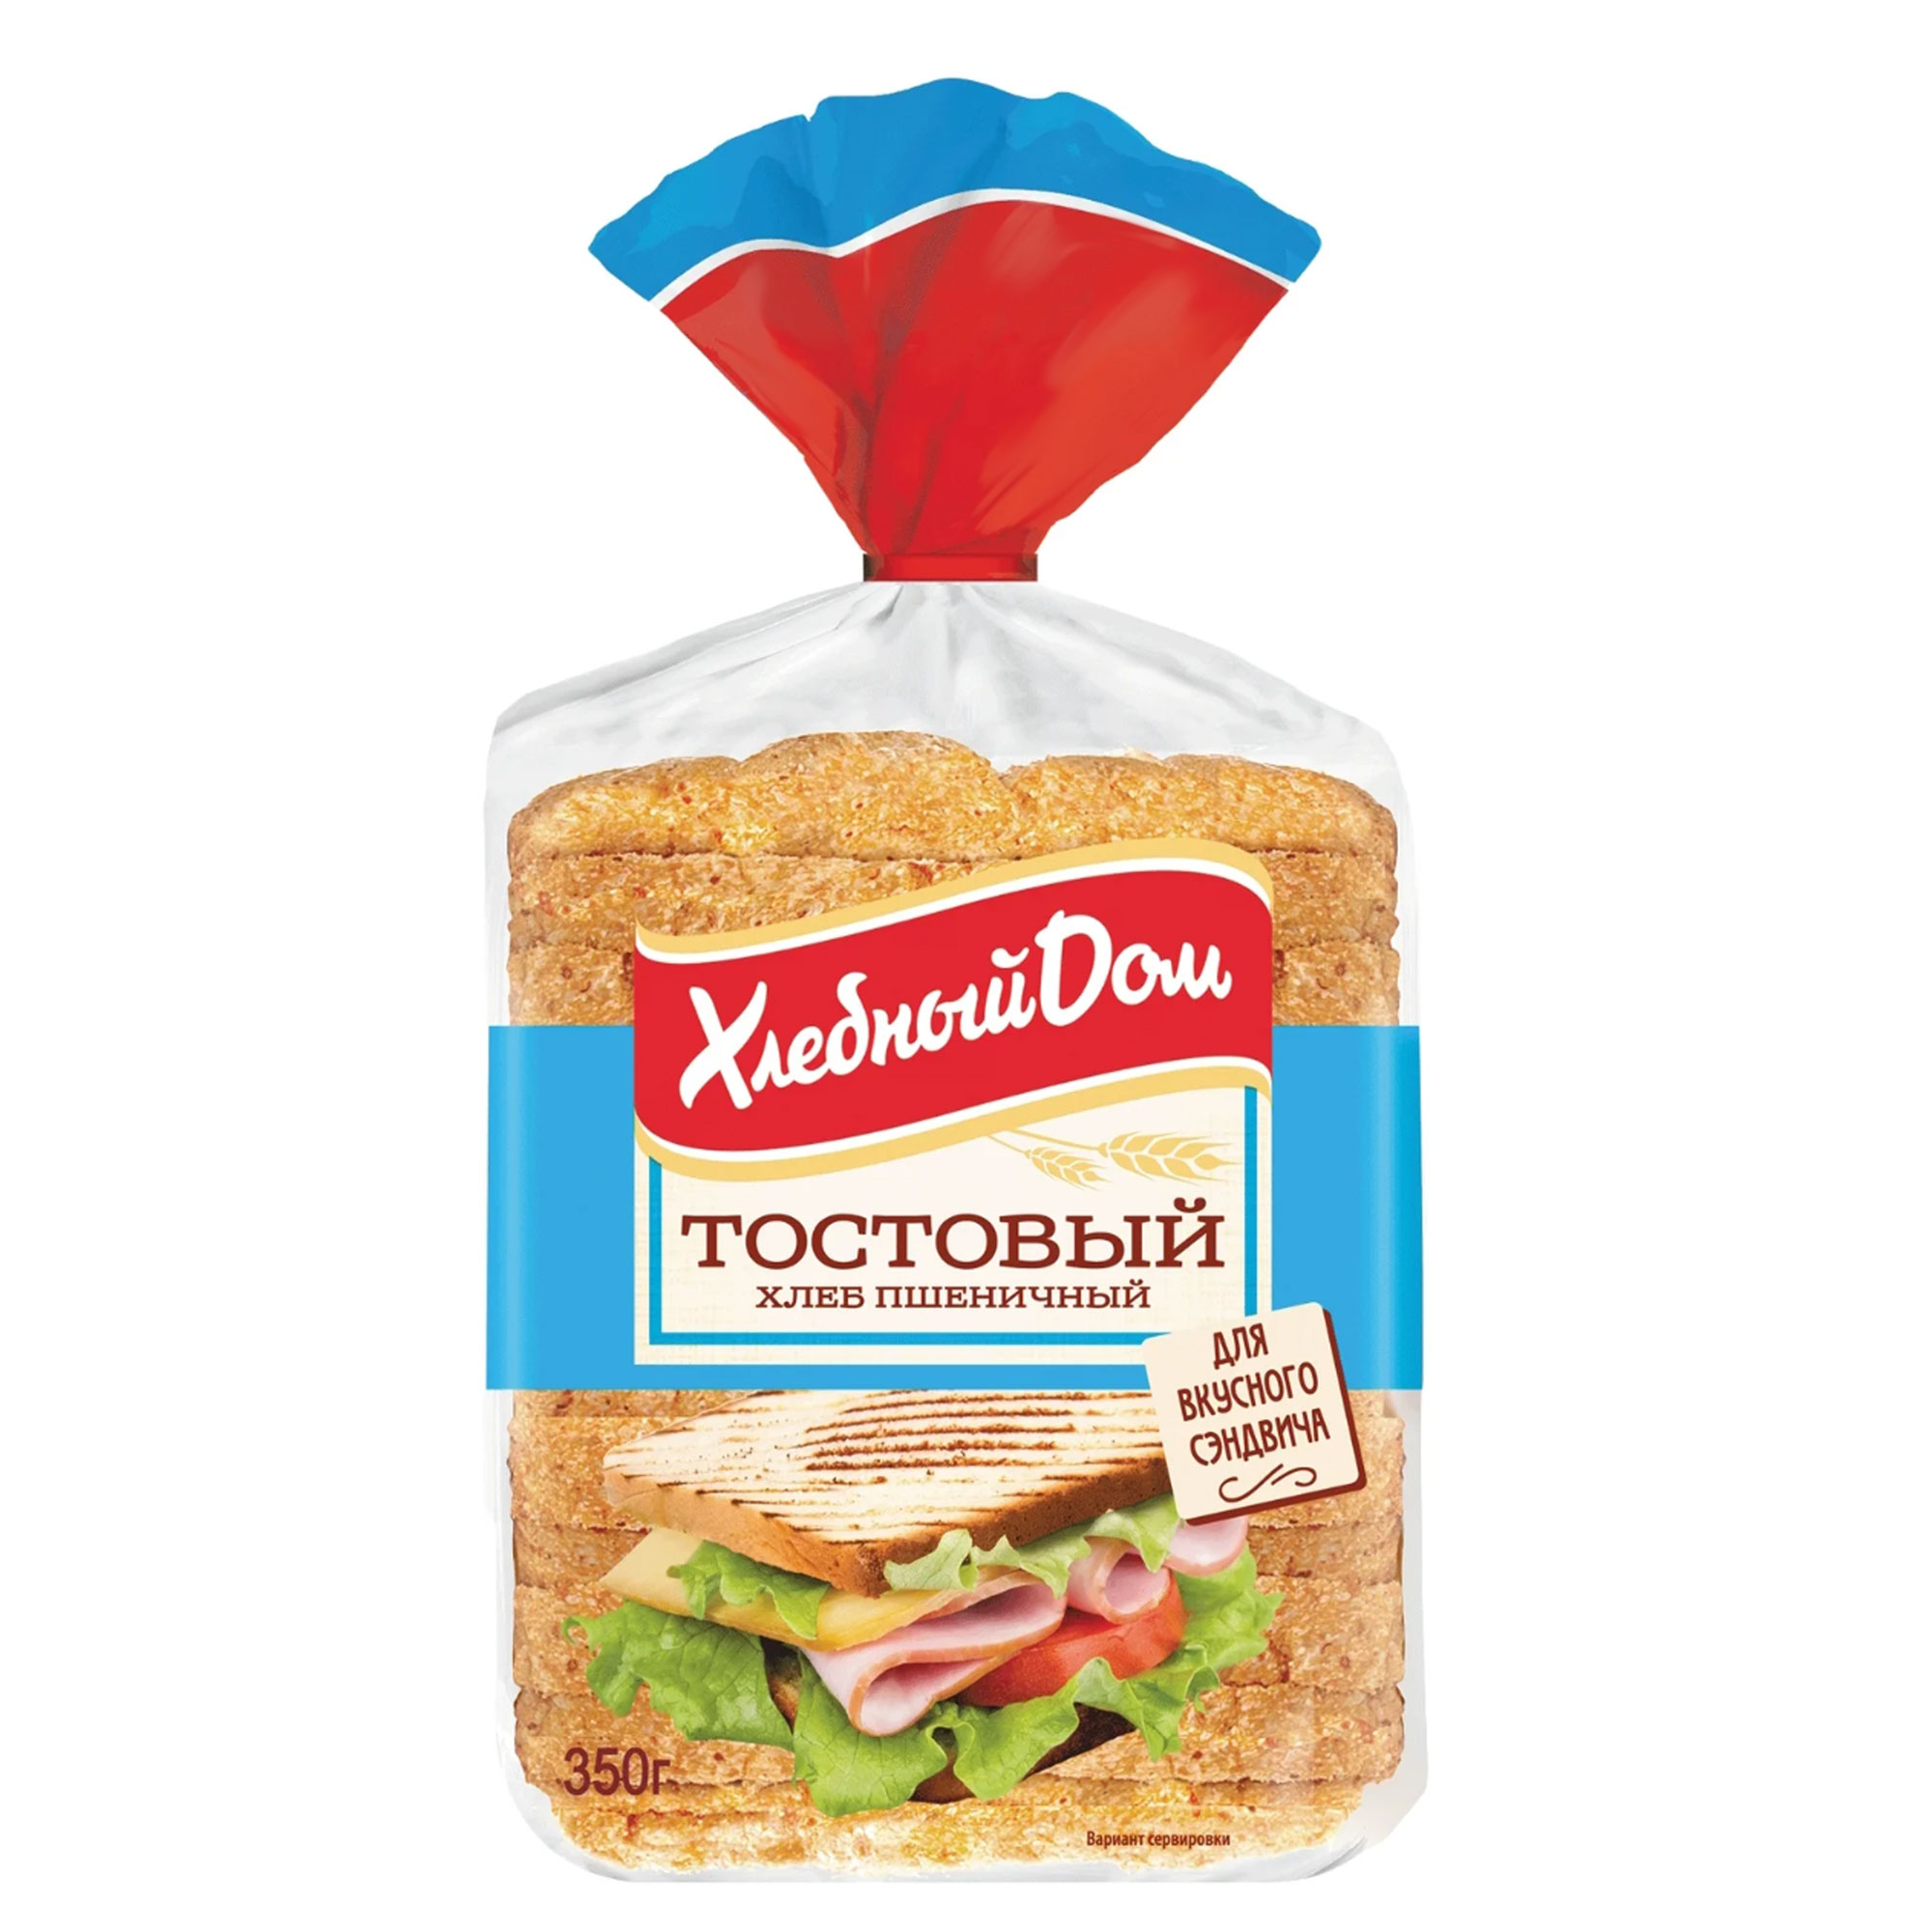 Хлеб тостовый Fazer белый 350 г хлеб щелковохлеб тостовый с пшеничными отрубями нарезка 450 г